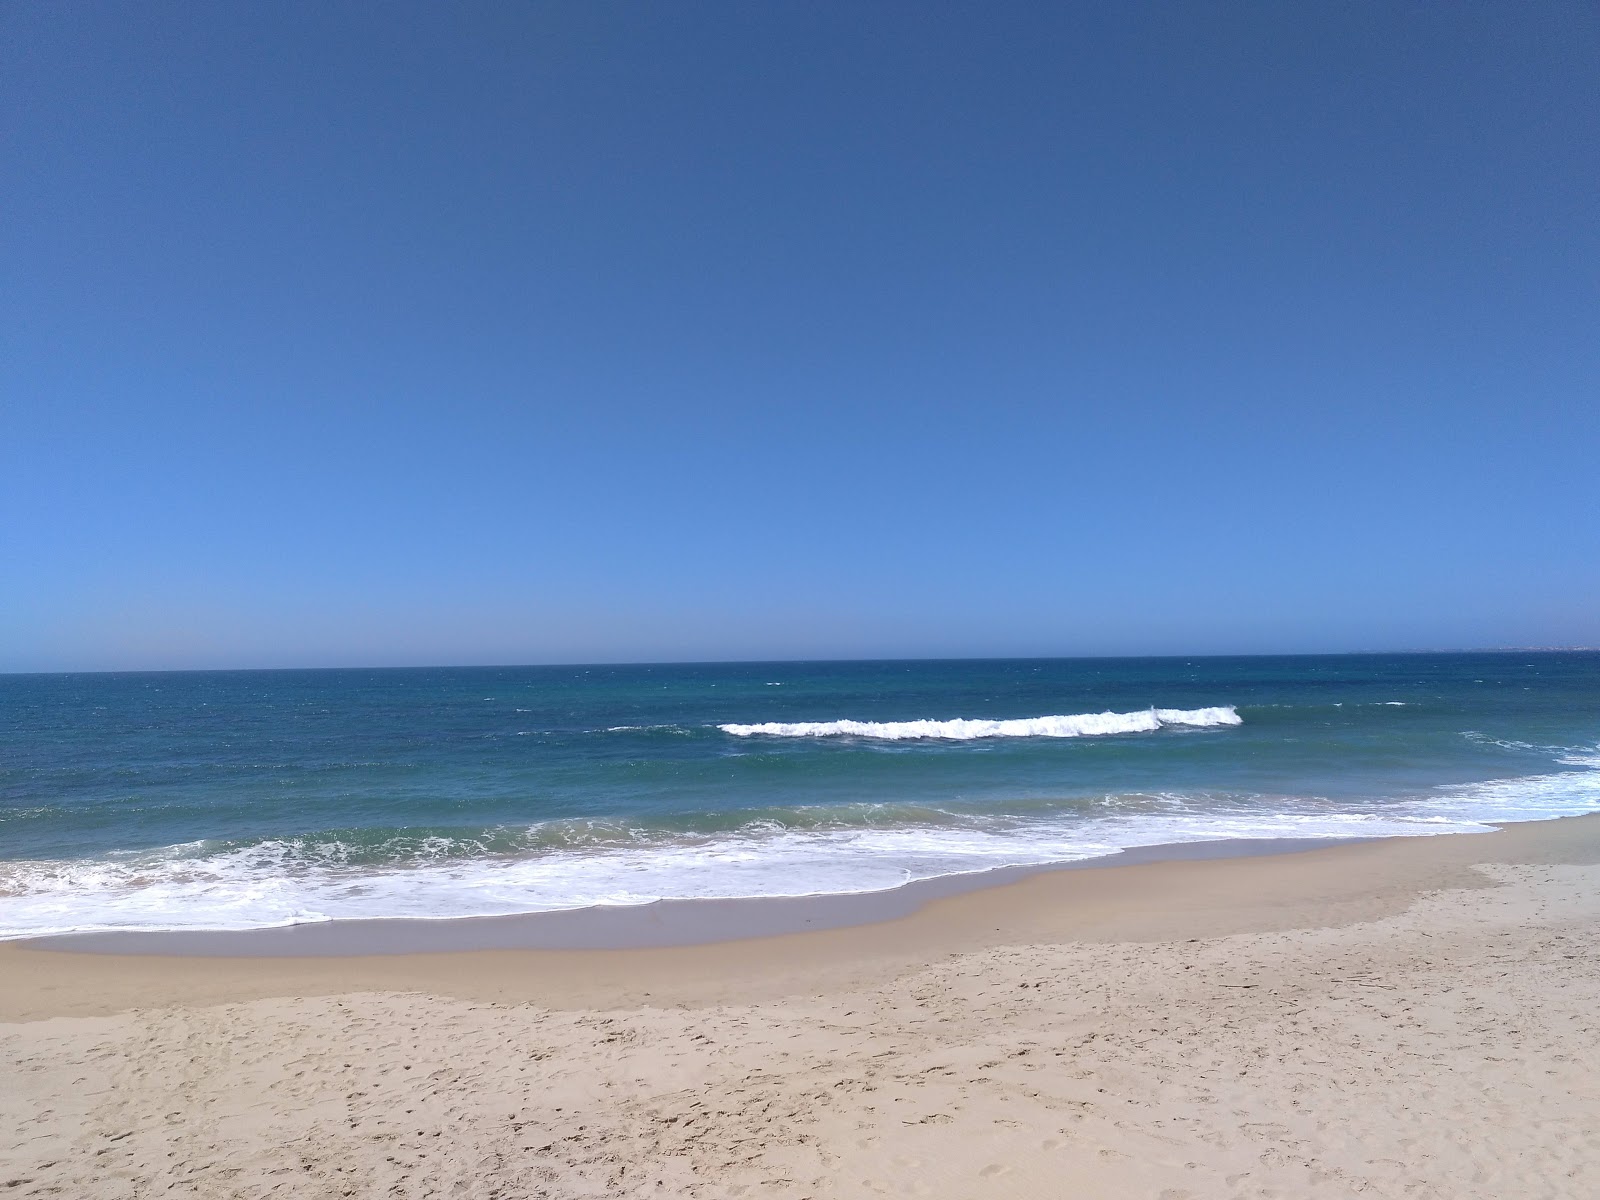 Fotografie cu Praia da Areia Branca - locul popular printre cunoscătorii de relaxare